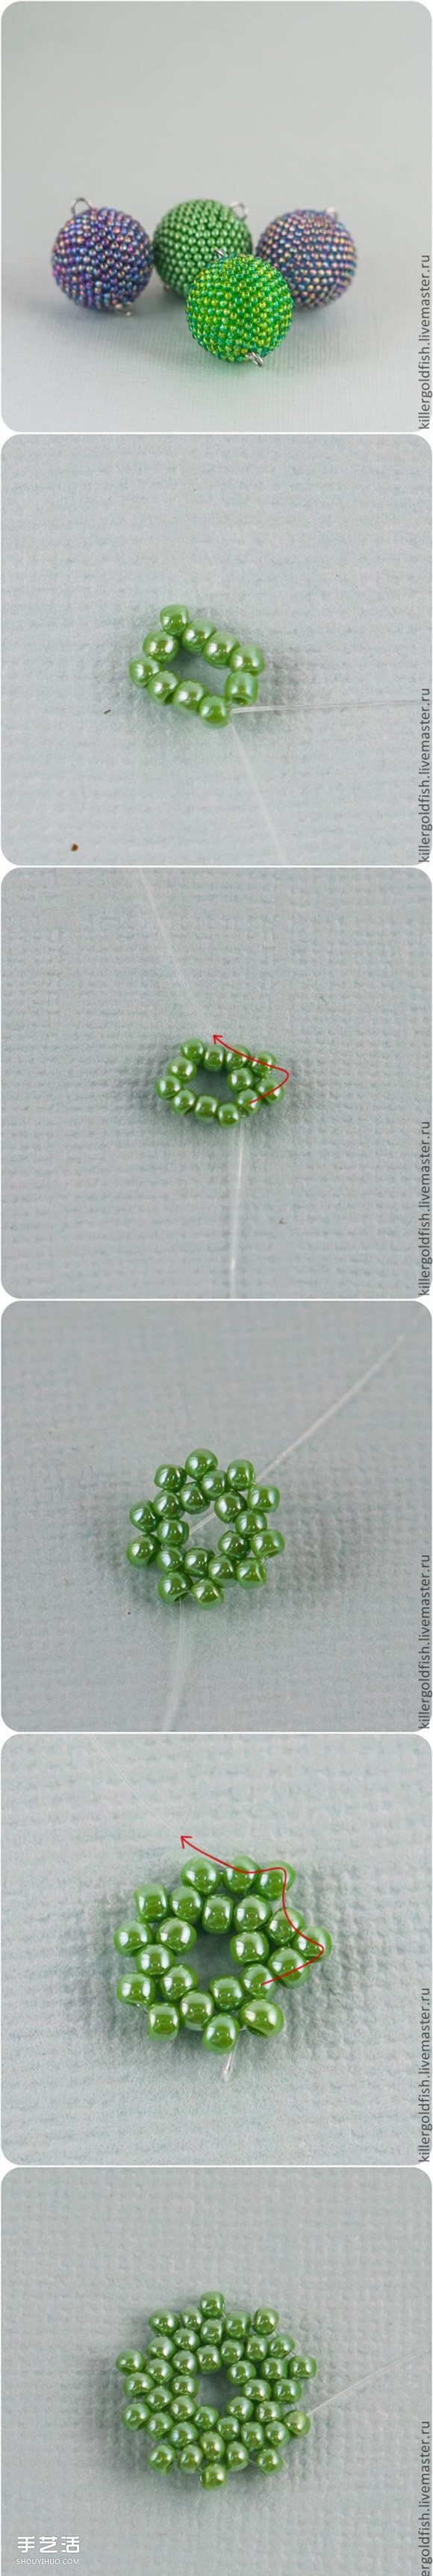 串珠圆球手工制作图解 串珠圆形珠子DIY教程